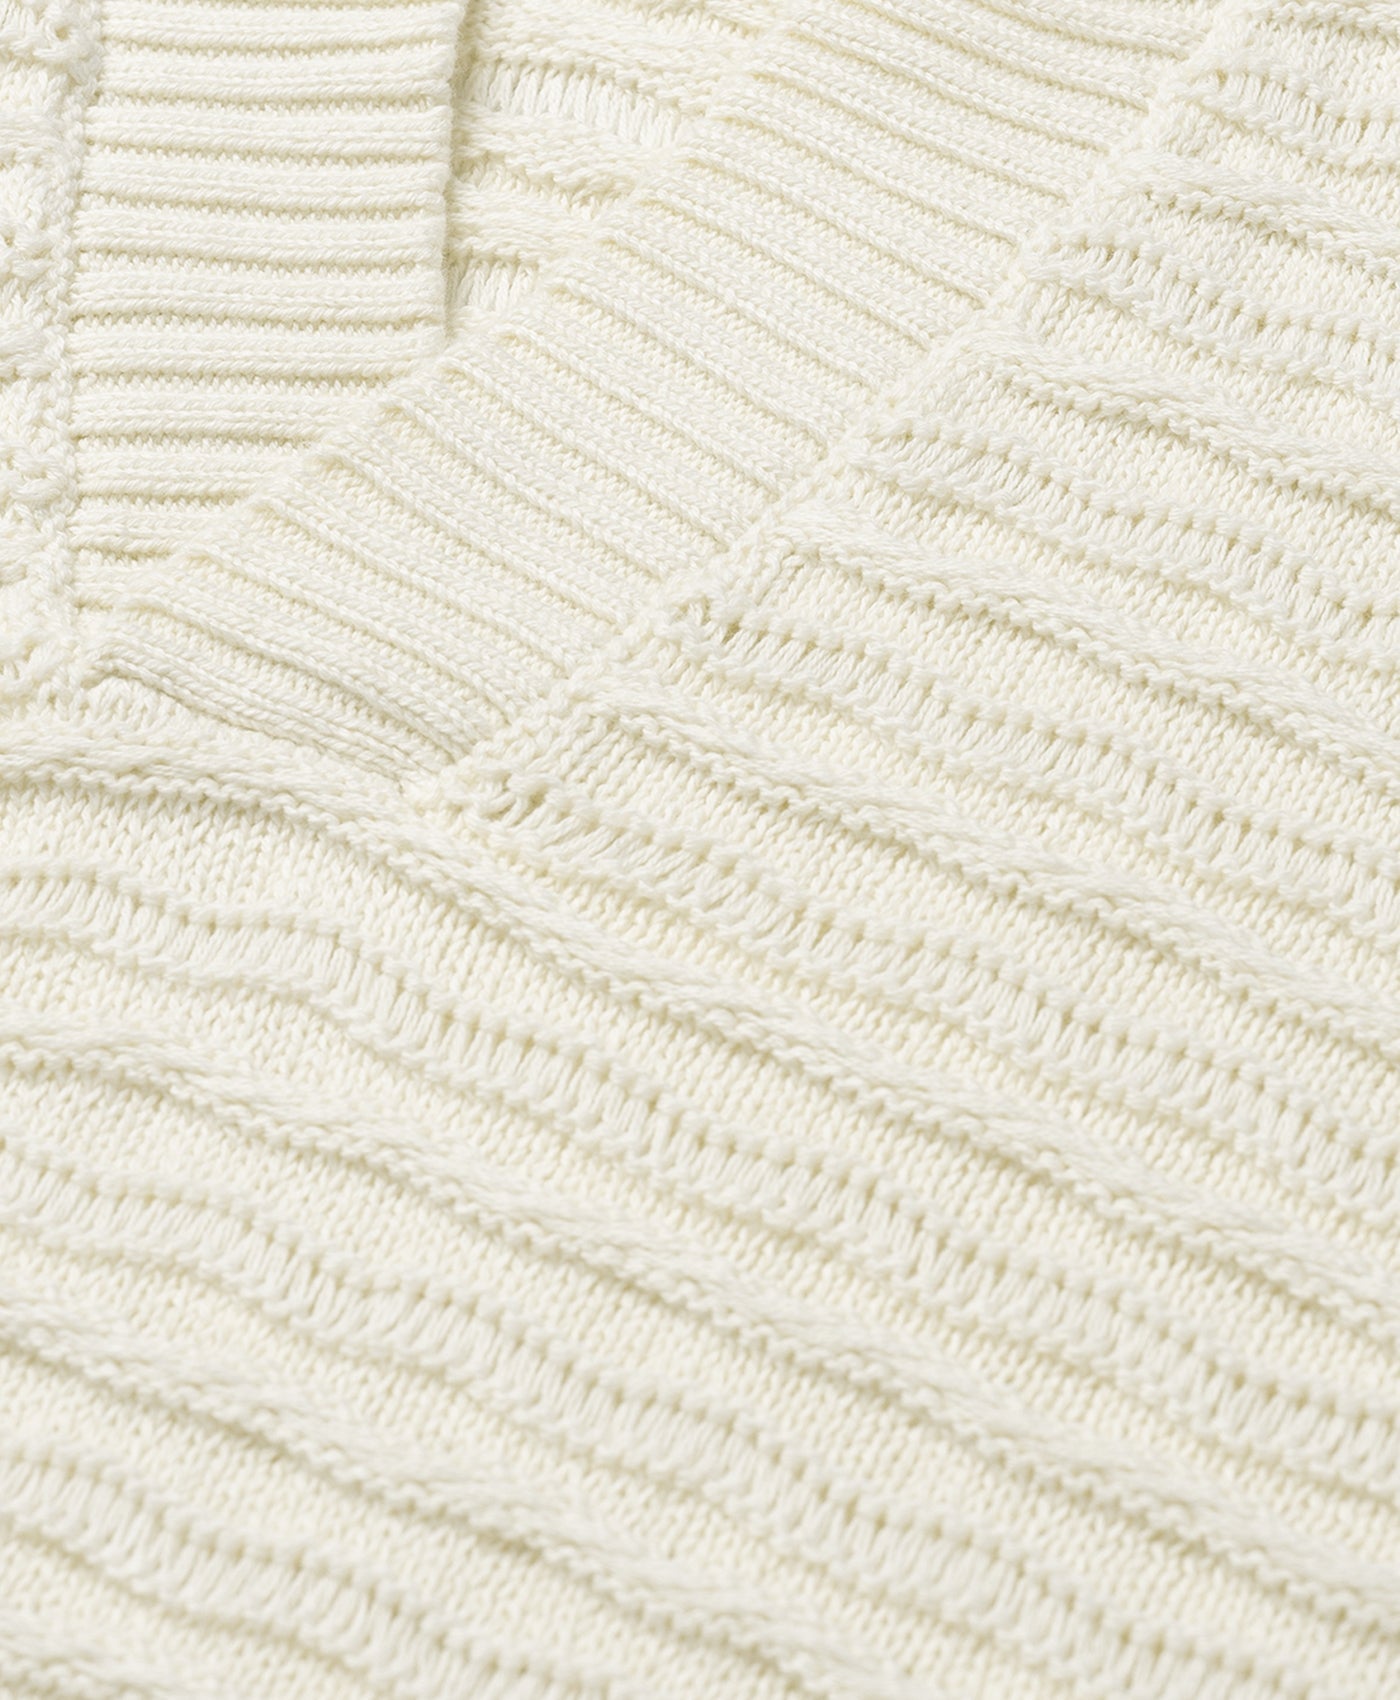 DP - Frost White Jabir Knit Sweater Polo - Packshot 